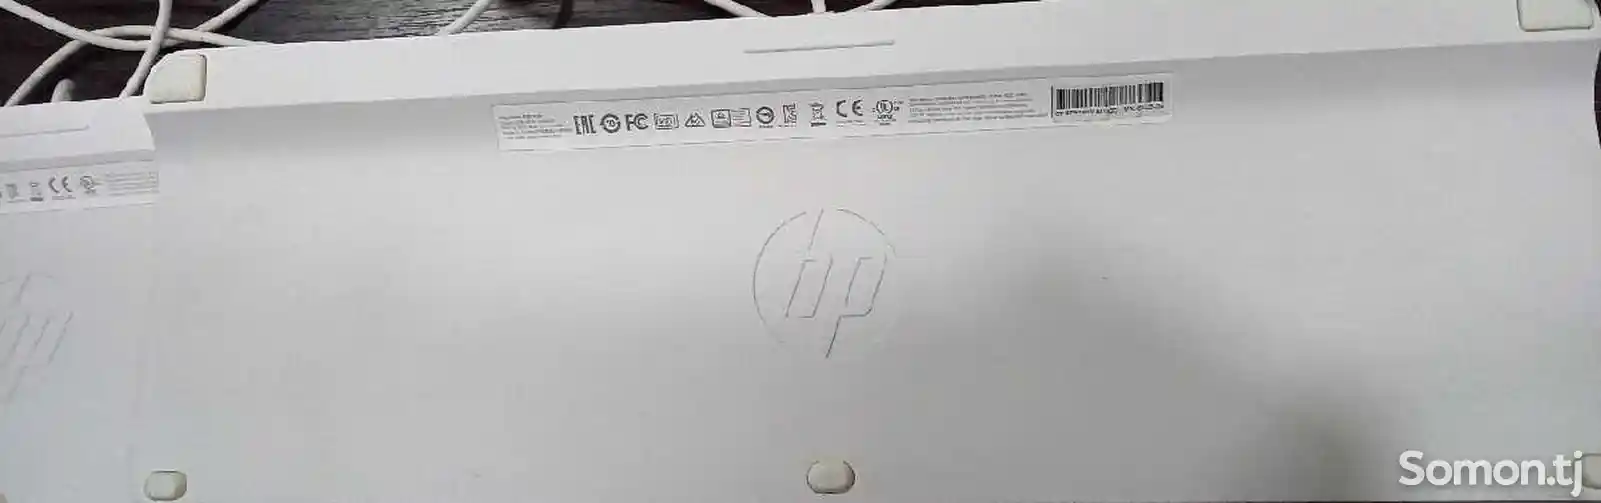 Клавиатура HP-4